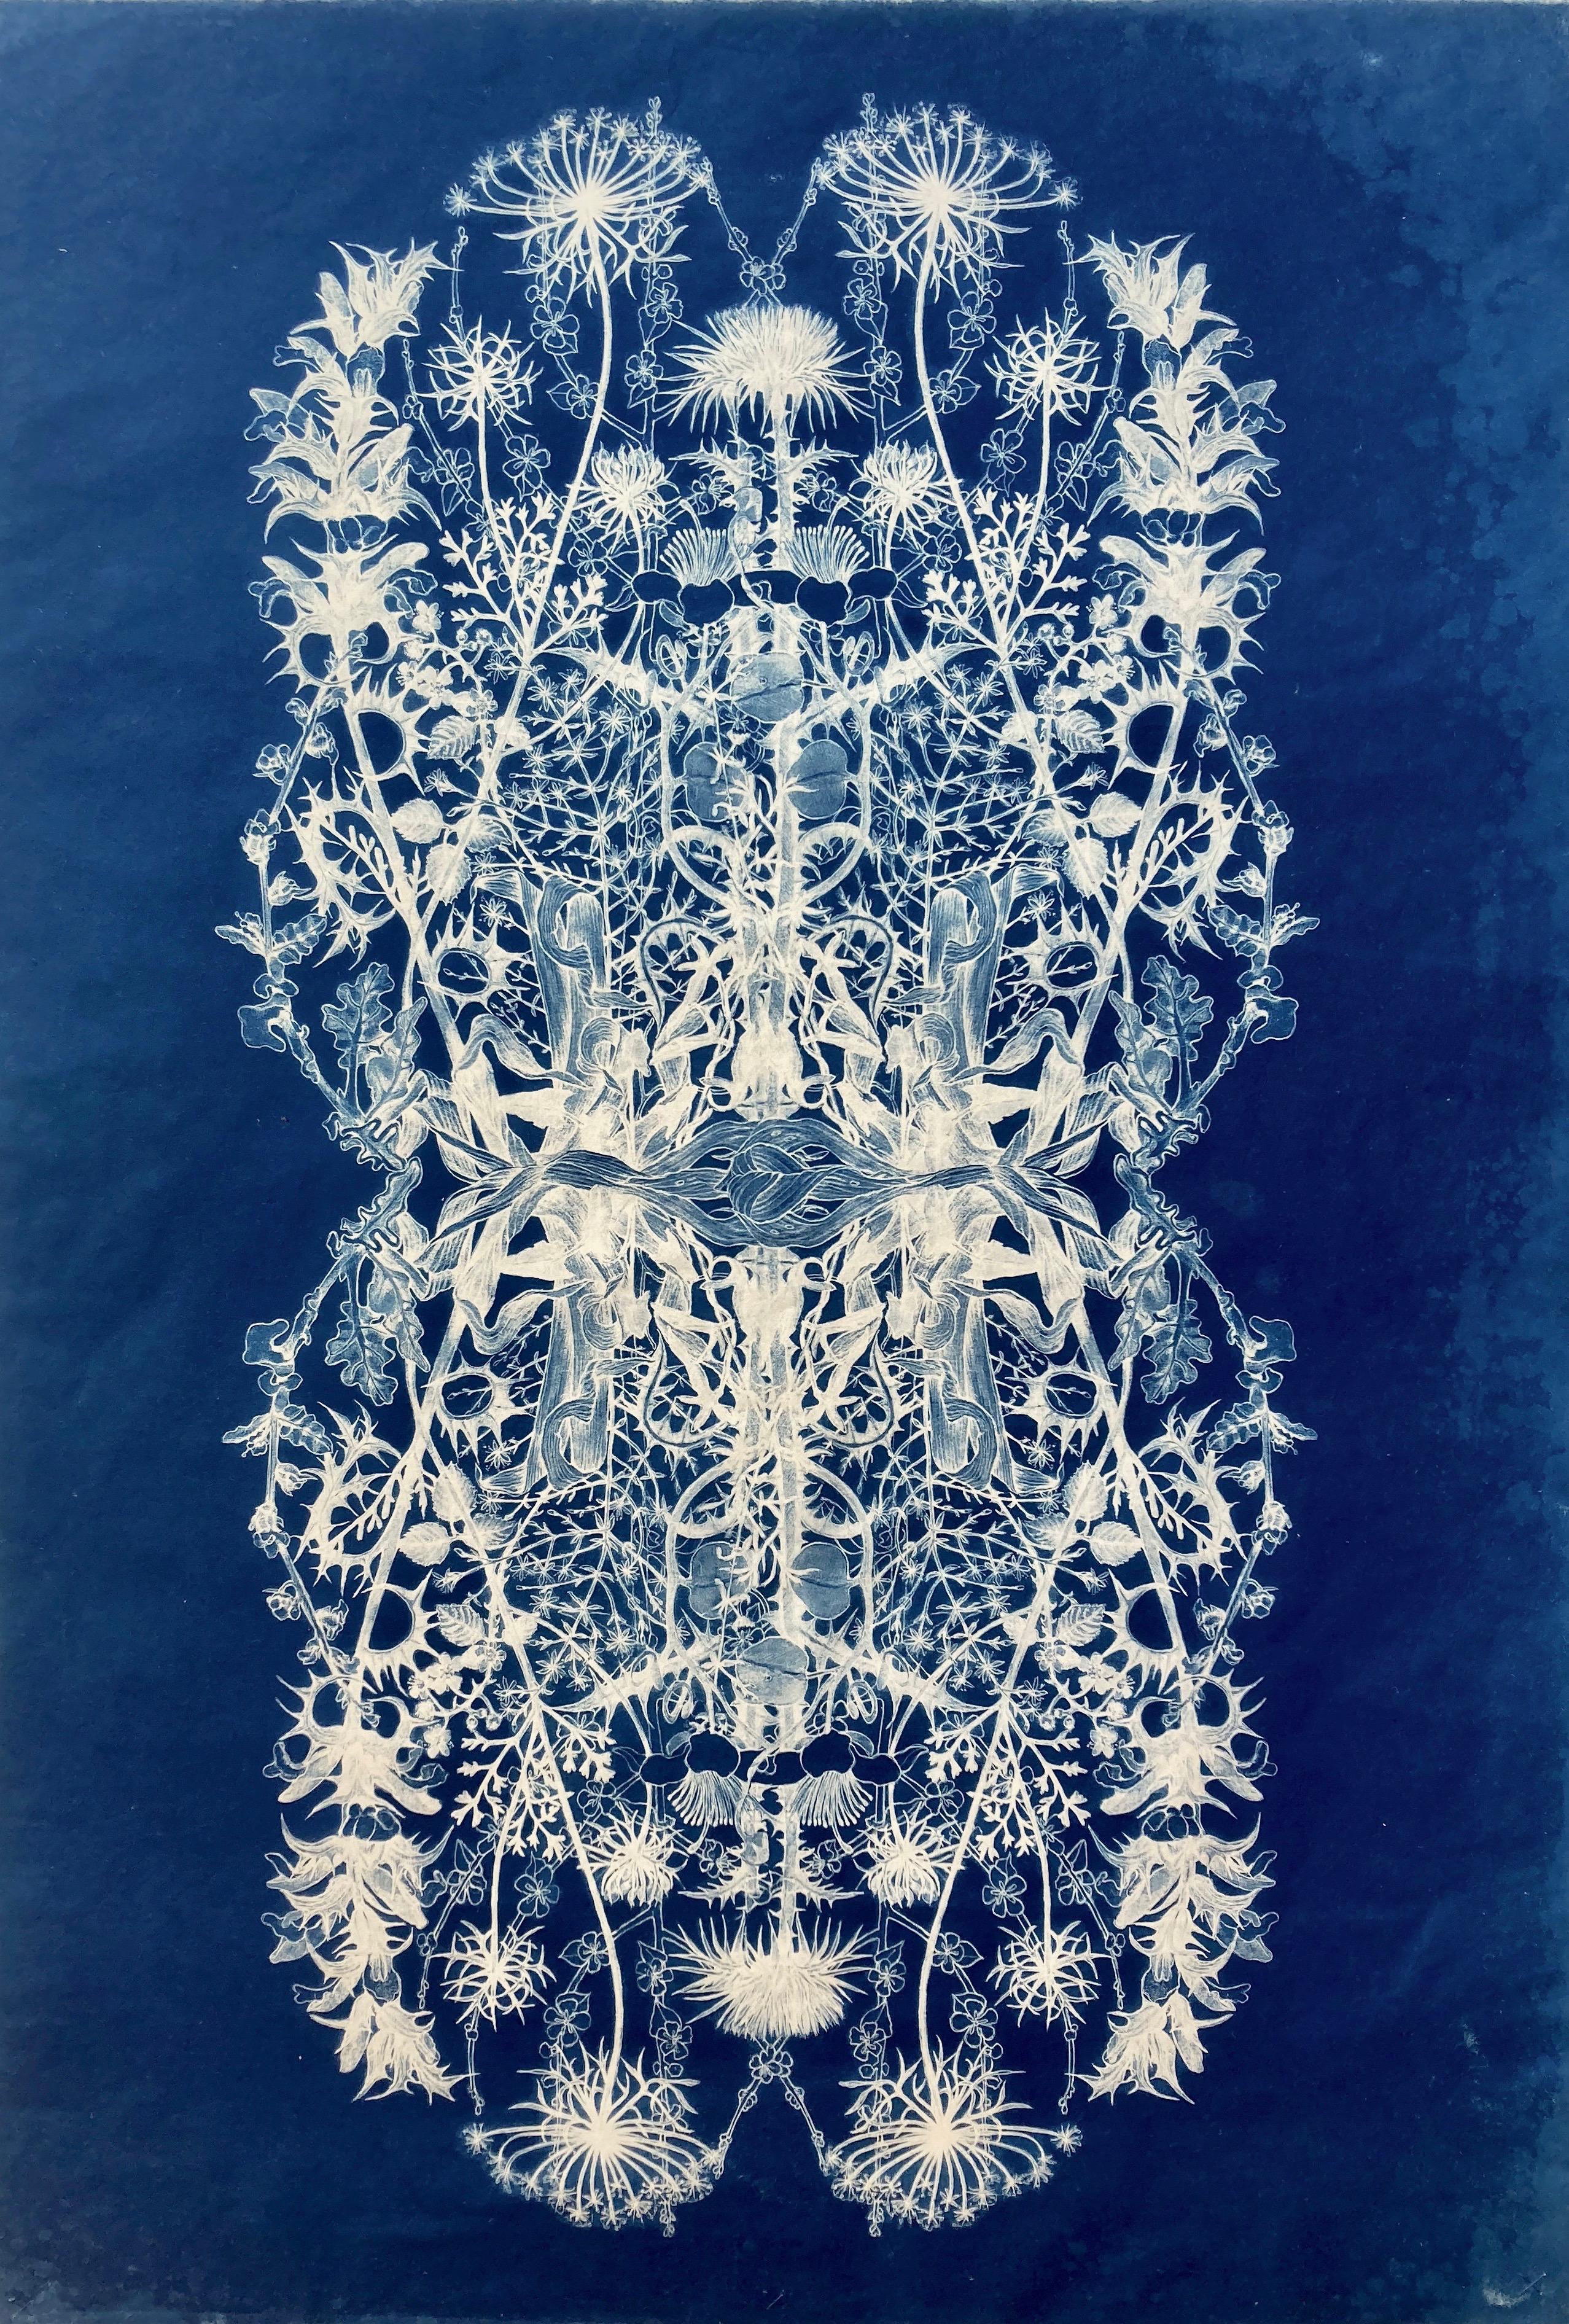 « Botanical Rhapsody II »  Photographie à motif floral réaliste/abstraite bleu/blanc